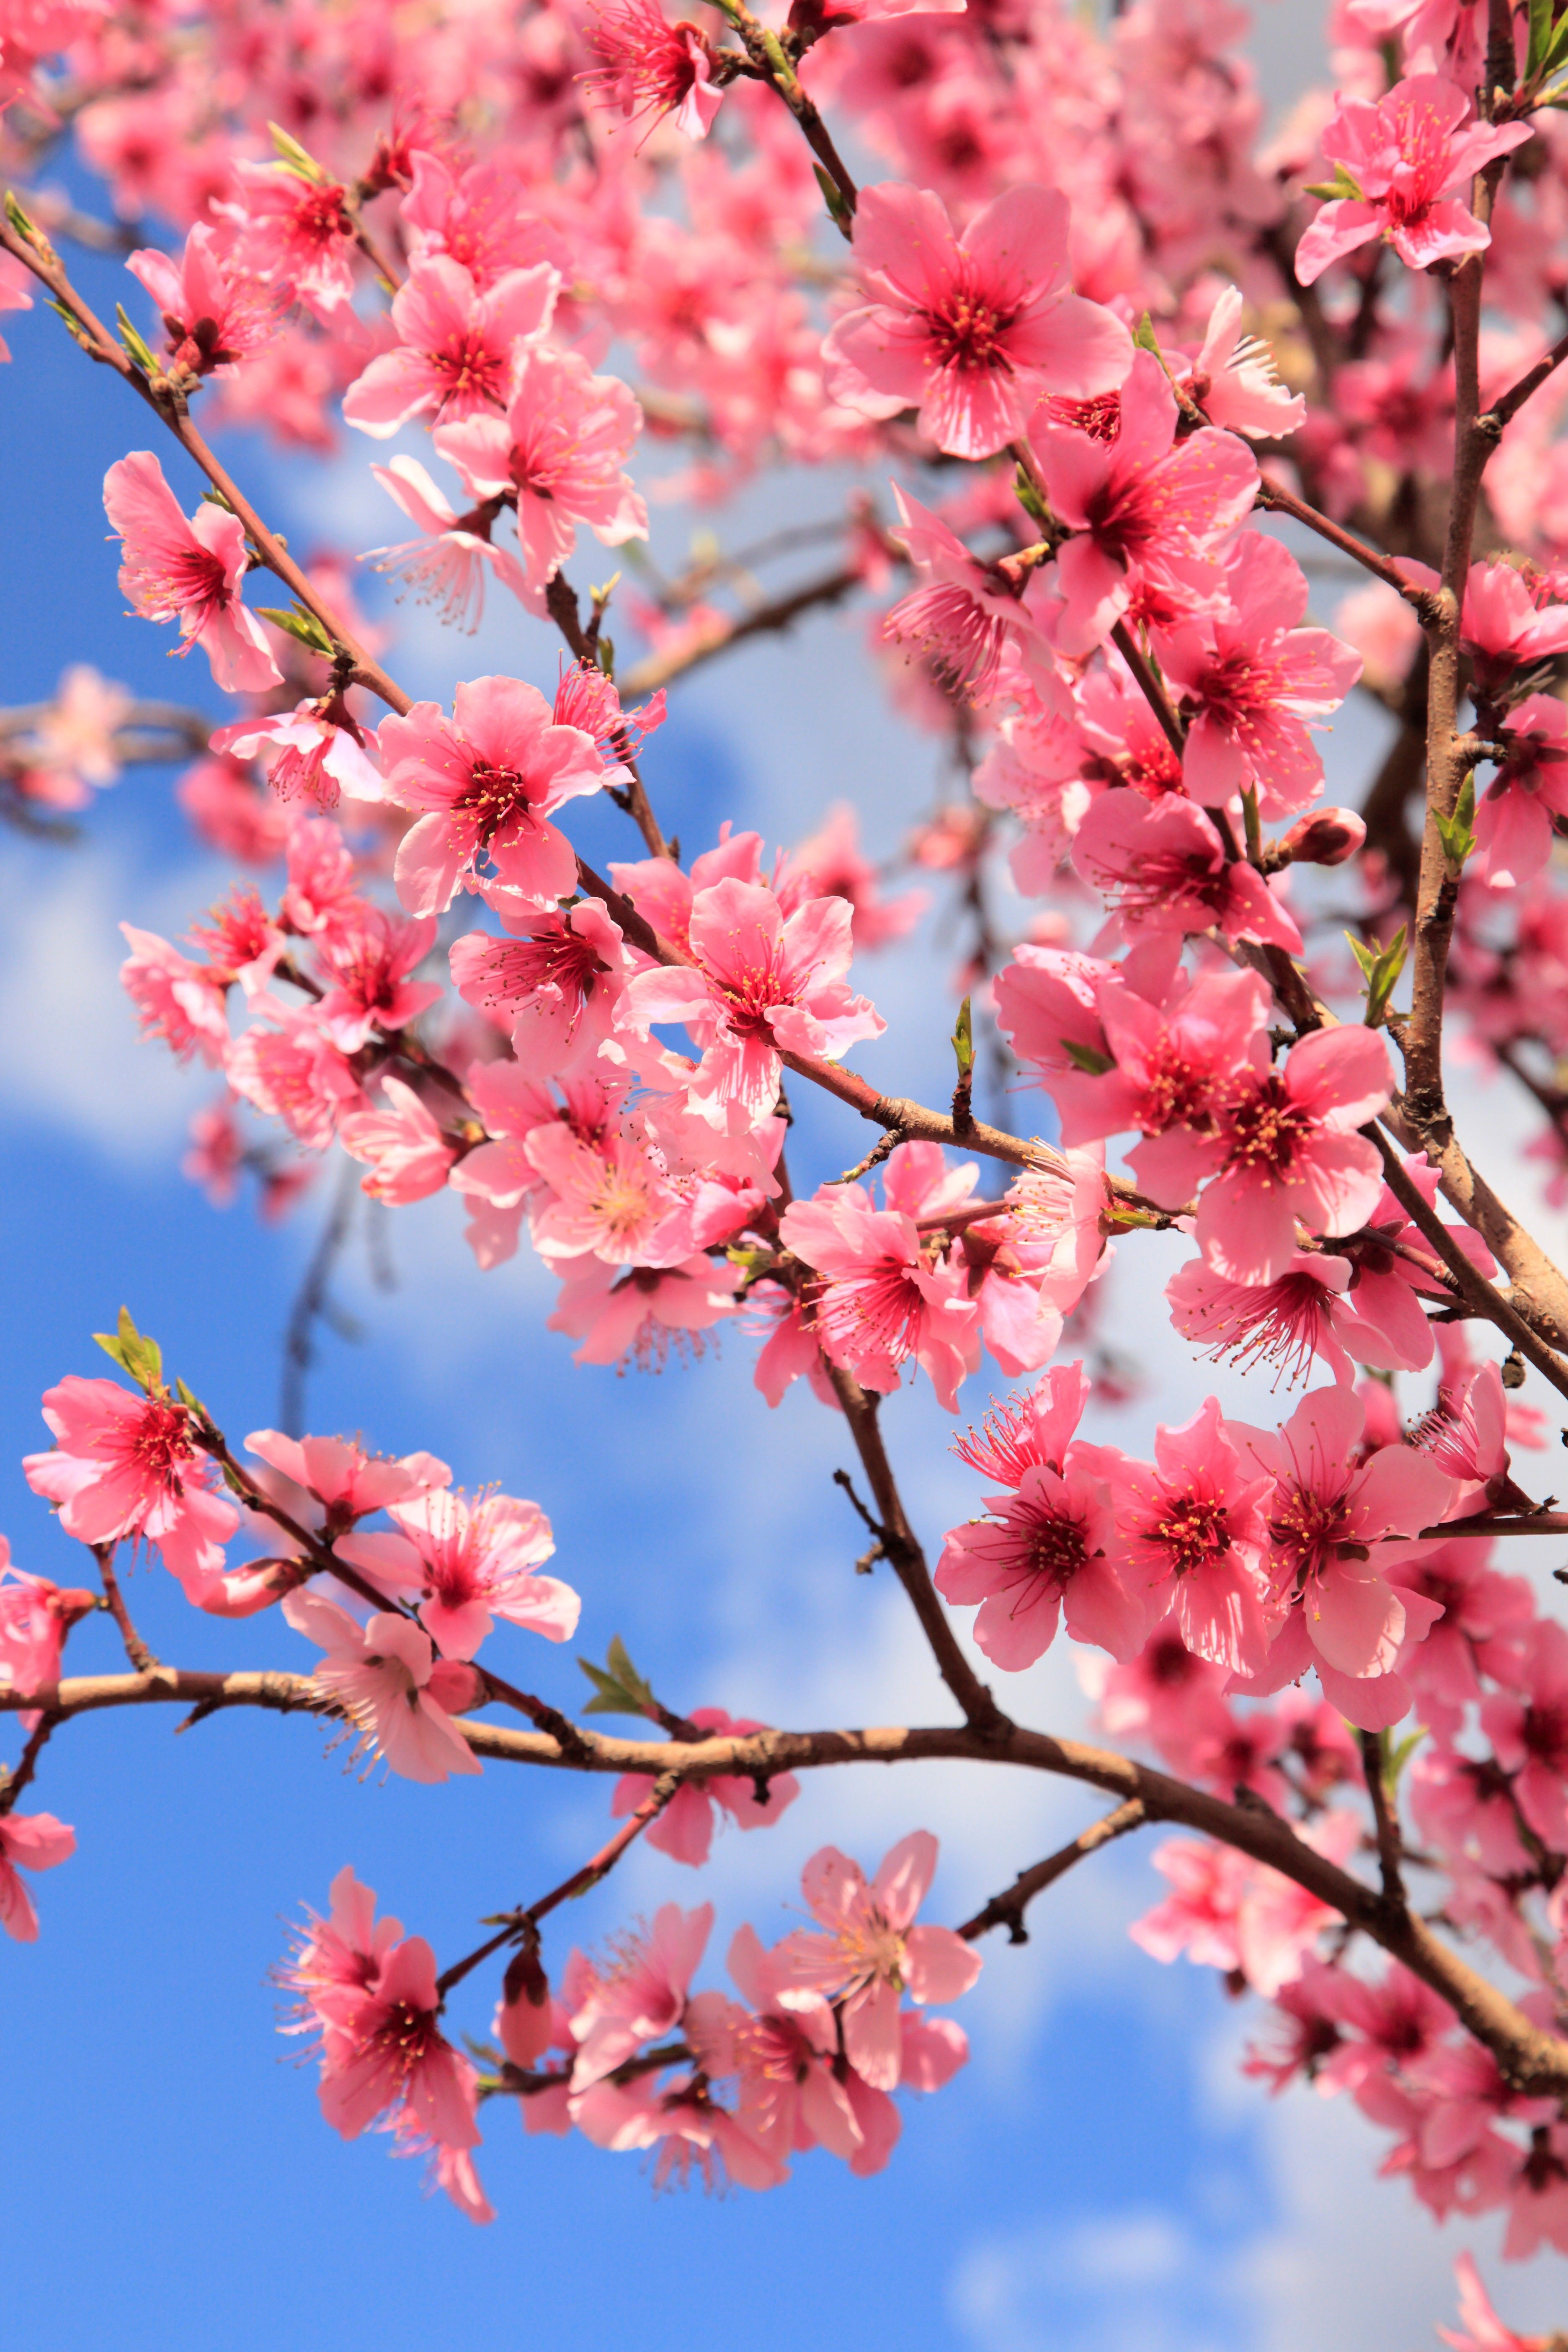 peach blossom spring review